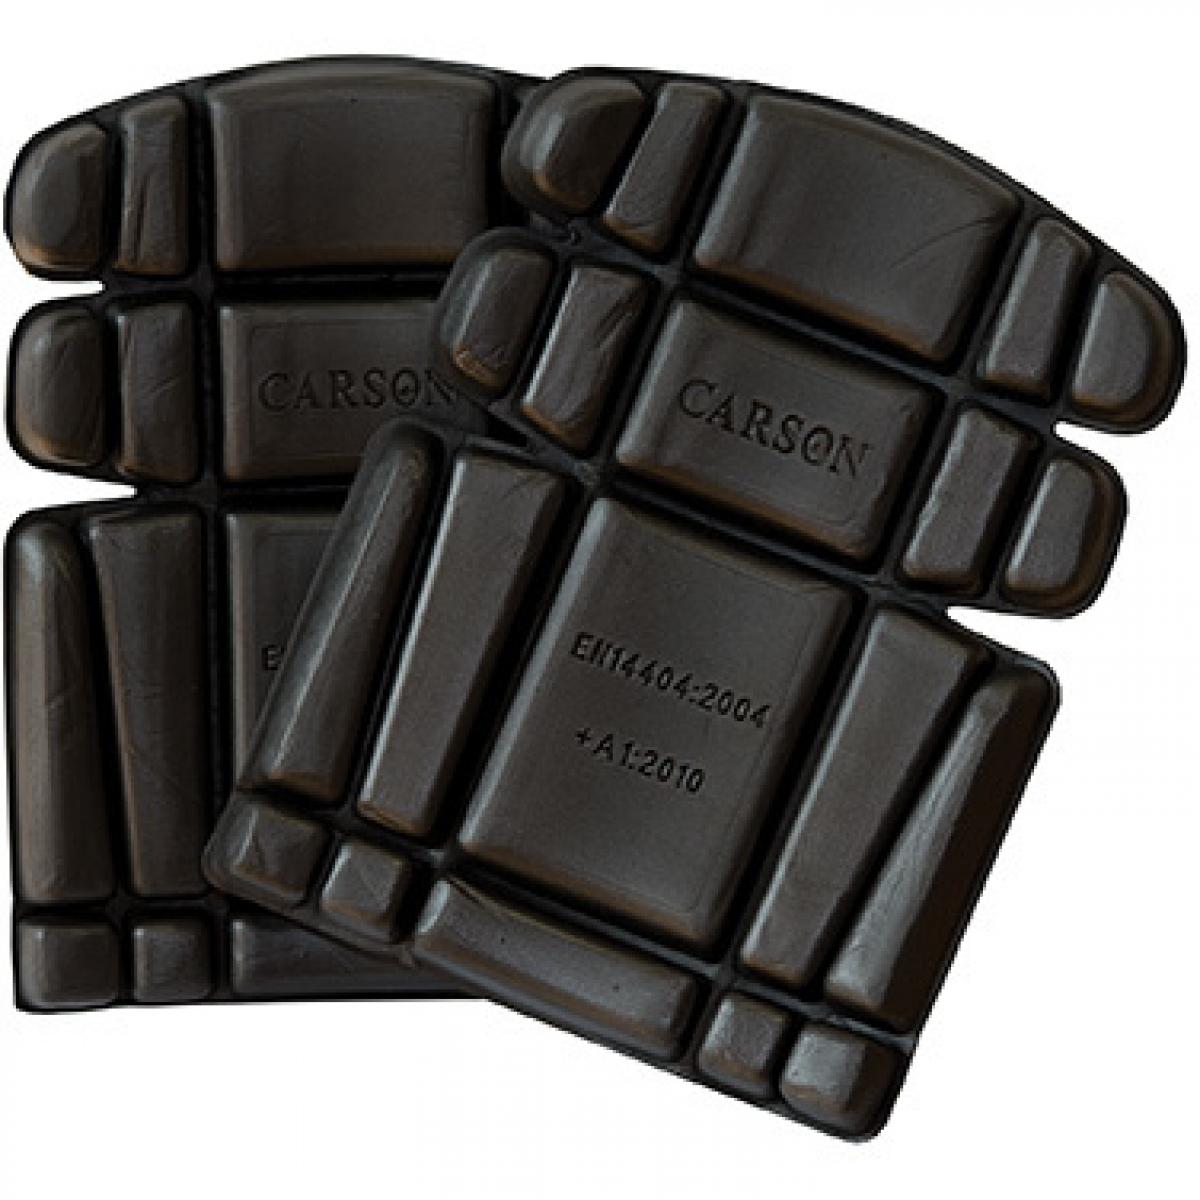 Hersteller: Carson Contrast Herstellernummer: KSAB Artikelbezeichnung: Knee Pads - Ergonomisches Kniekissen Farbe: Black